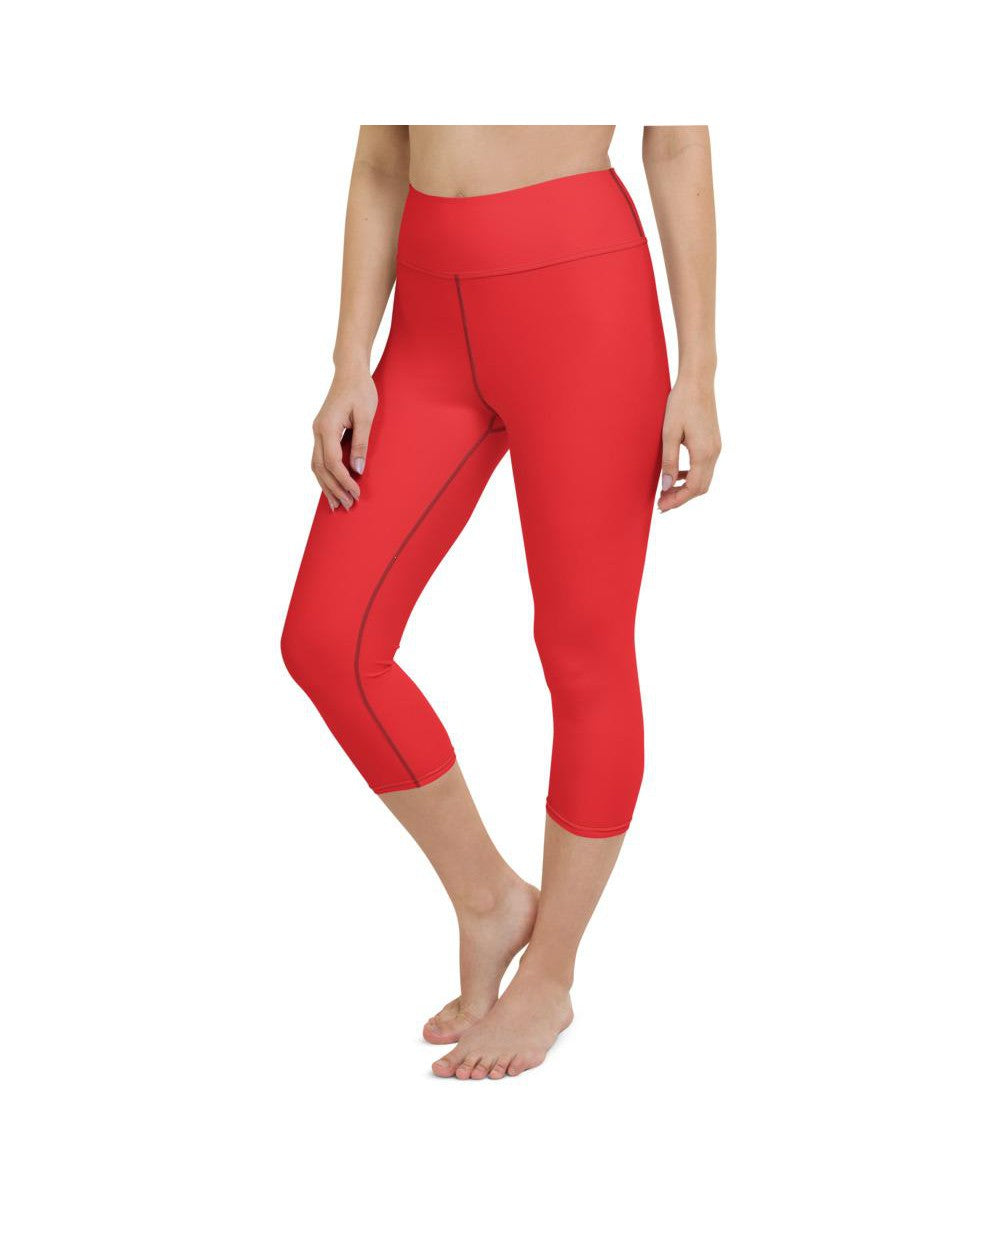 Womens Yoga Capris Solid Hot Red Yoga Capris | Gearbunch.com